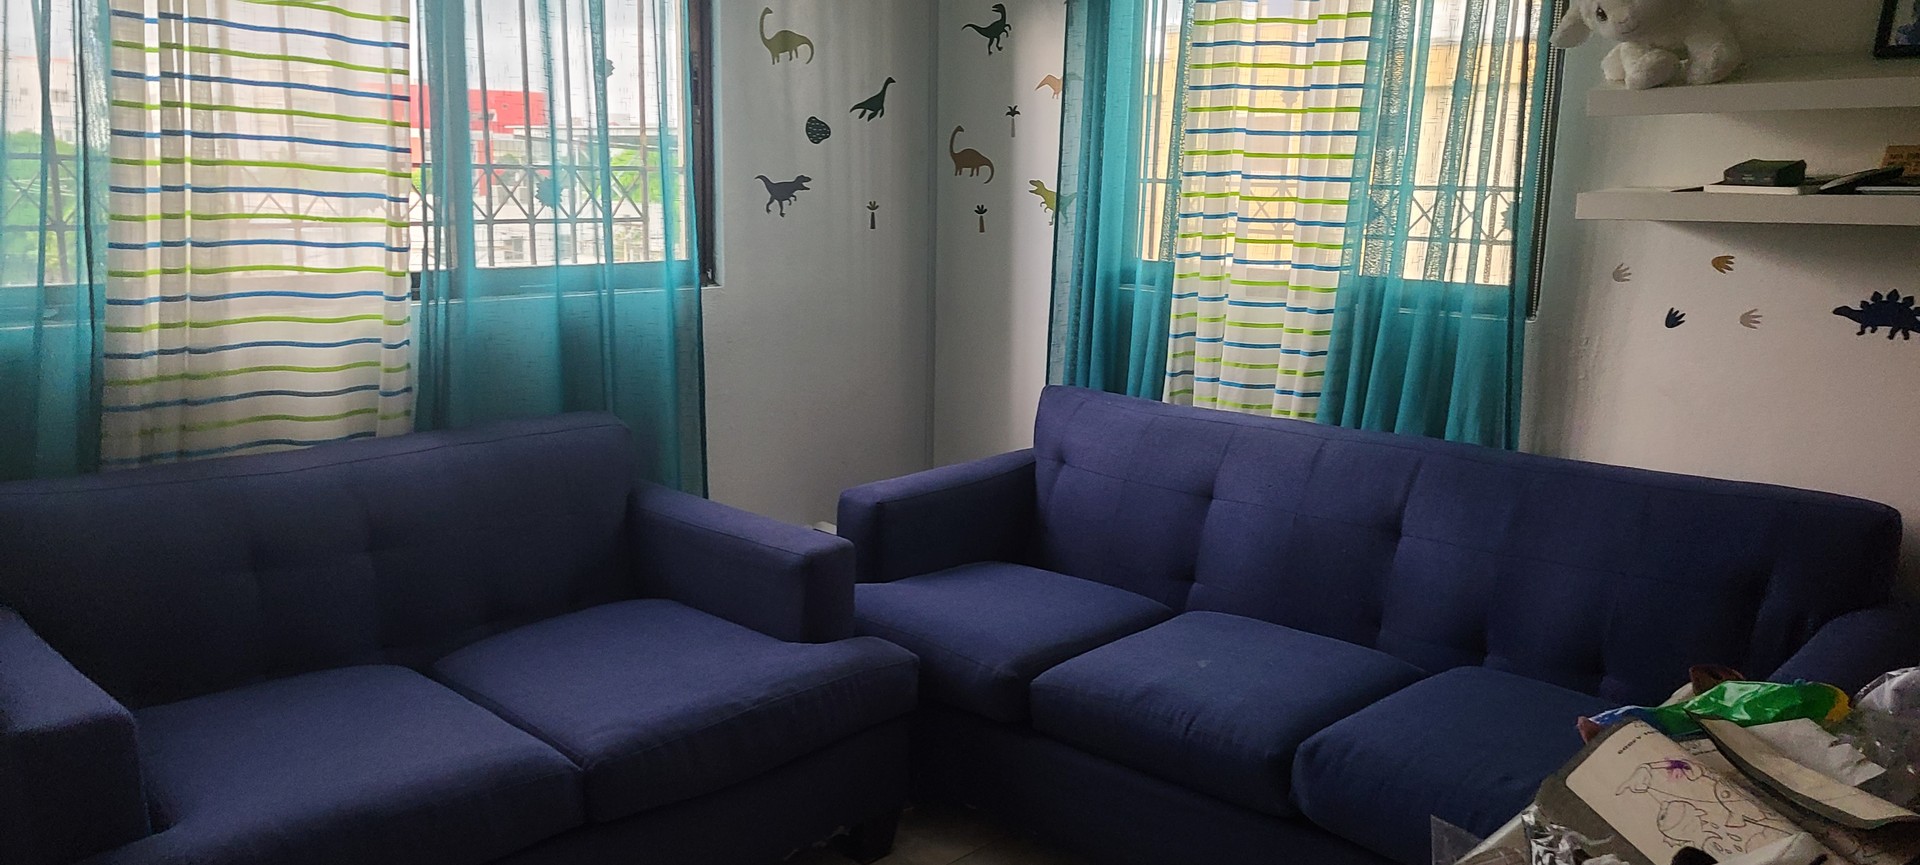 muebles y colchones - Juego de muebles azul oscuro  (1 mueble de 3 plazas y 1 de 2 plazas) 